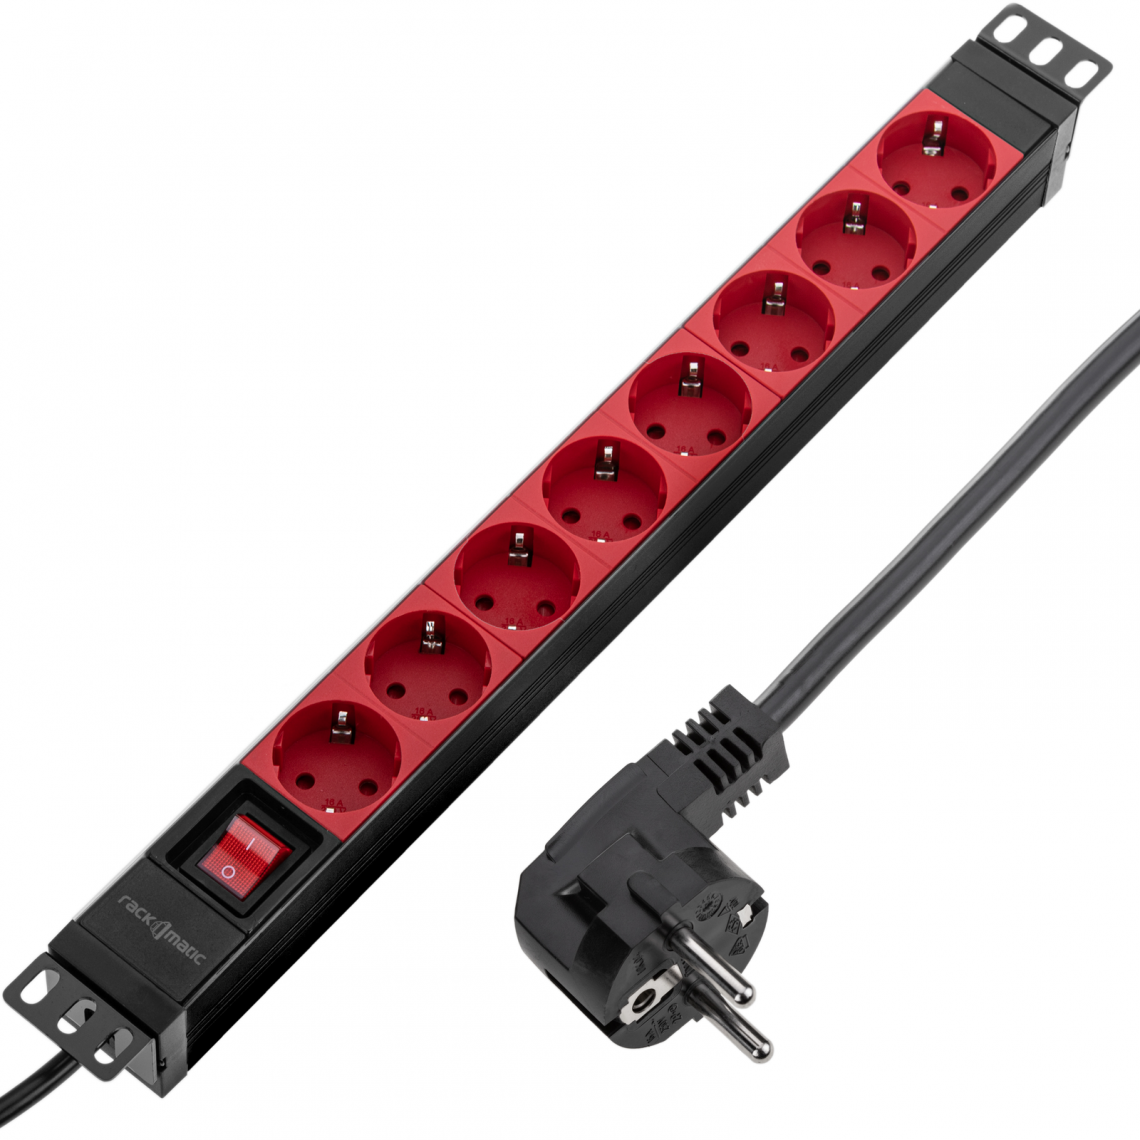 Rackmatic - Barrette d'alimentation en PVC pour armoire rack 19 1U avec 8 prises Schuko rouges, interrupteur et boîtier noir - Rack amovible